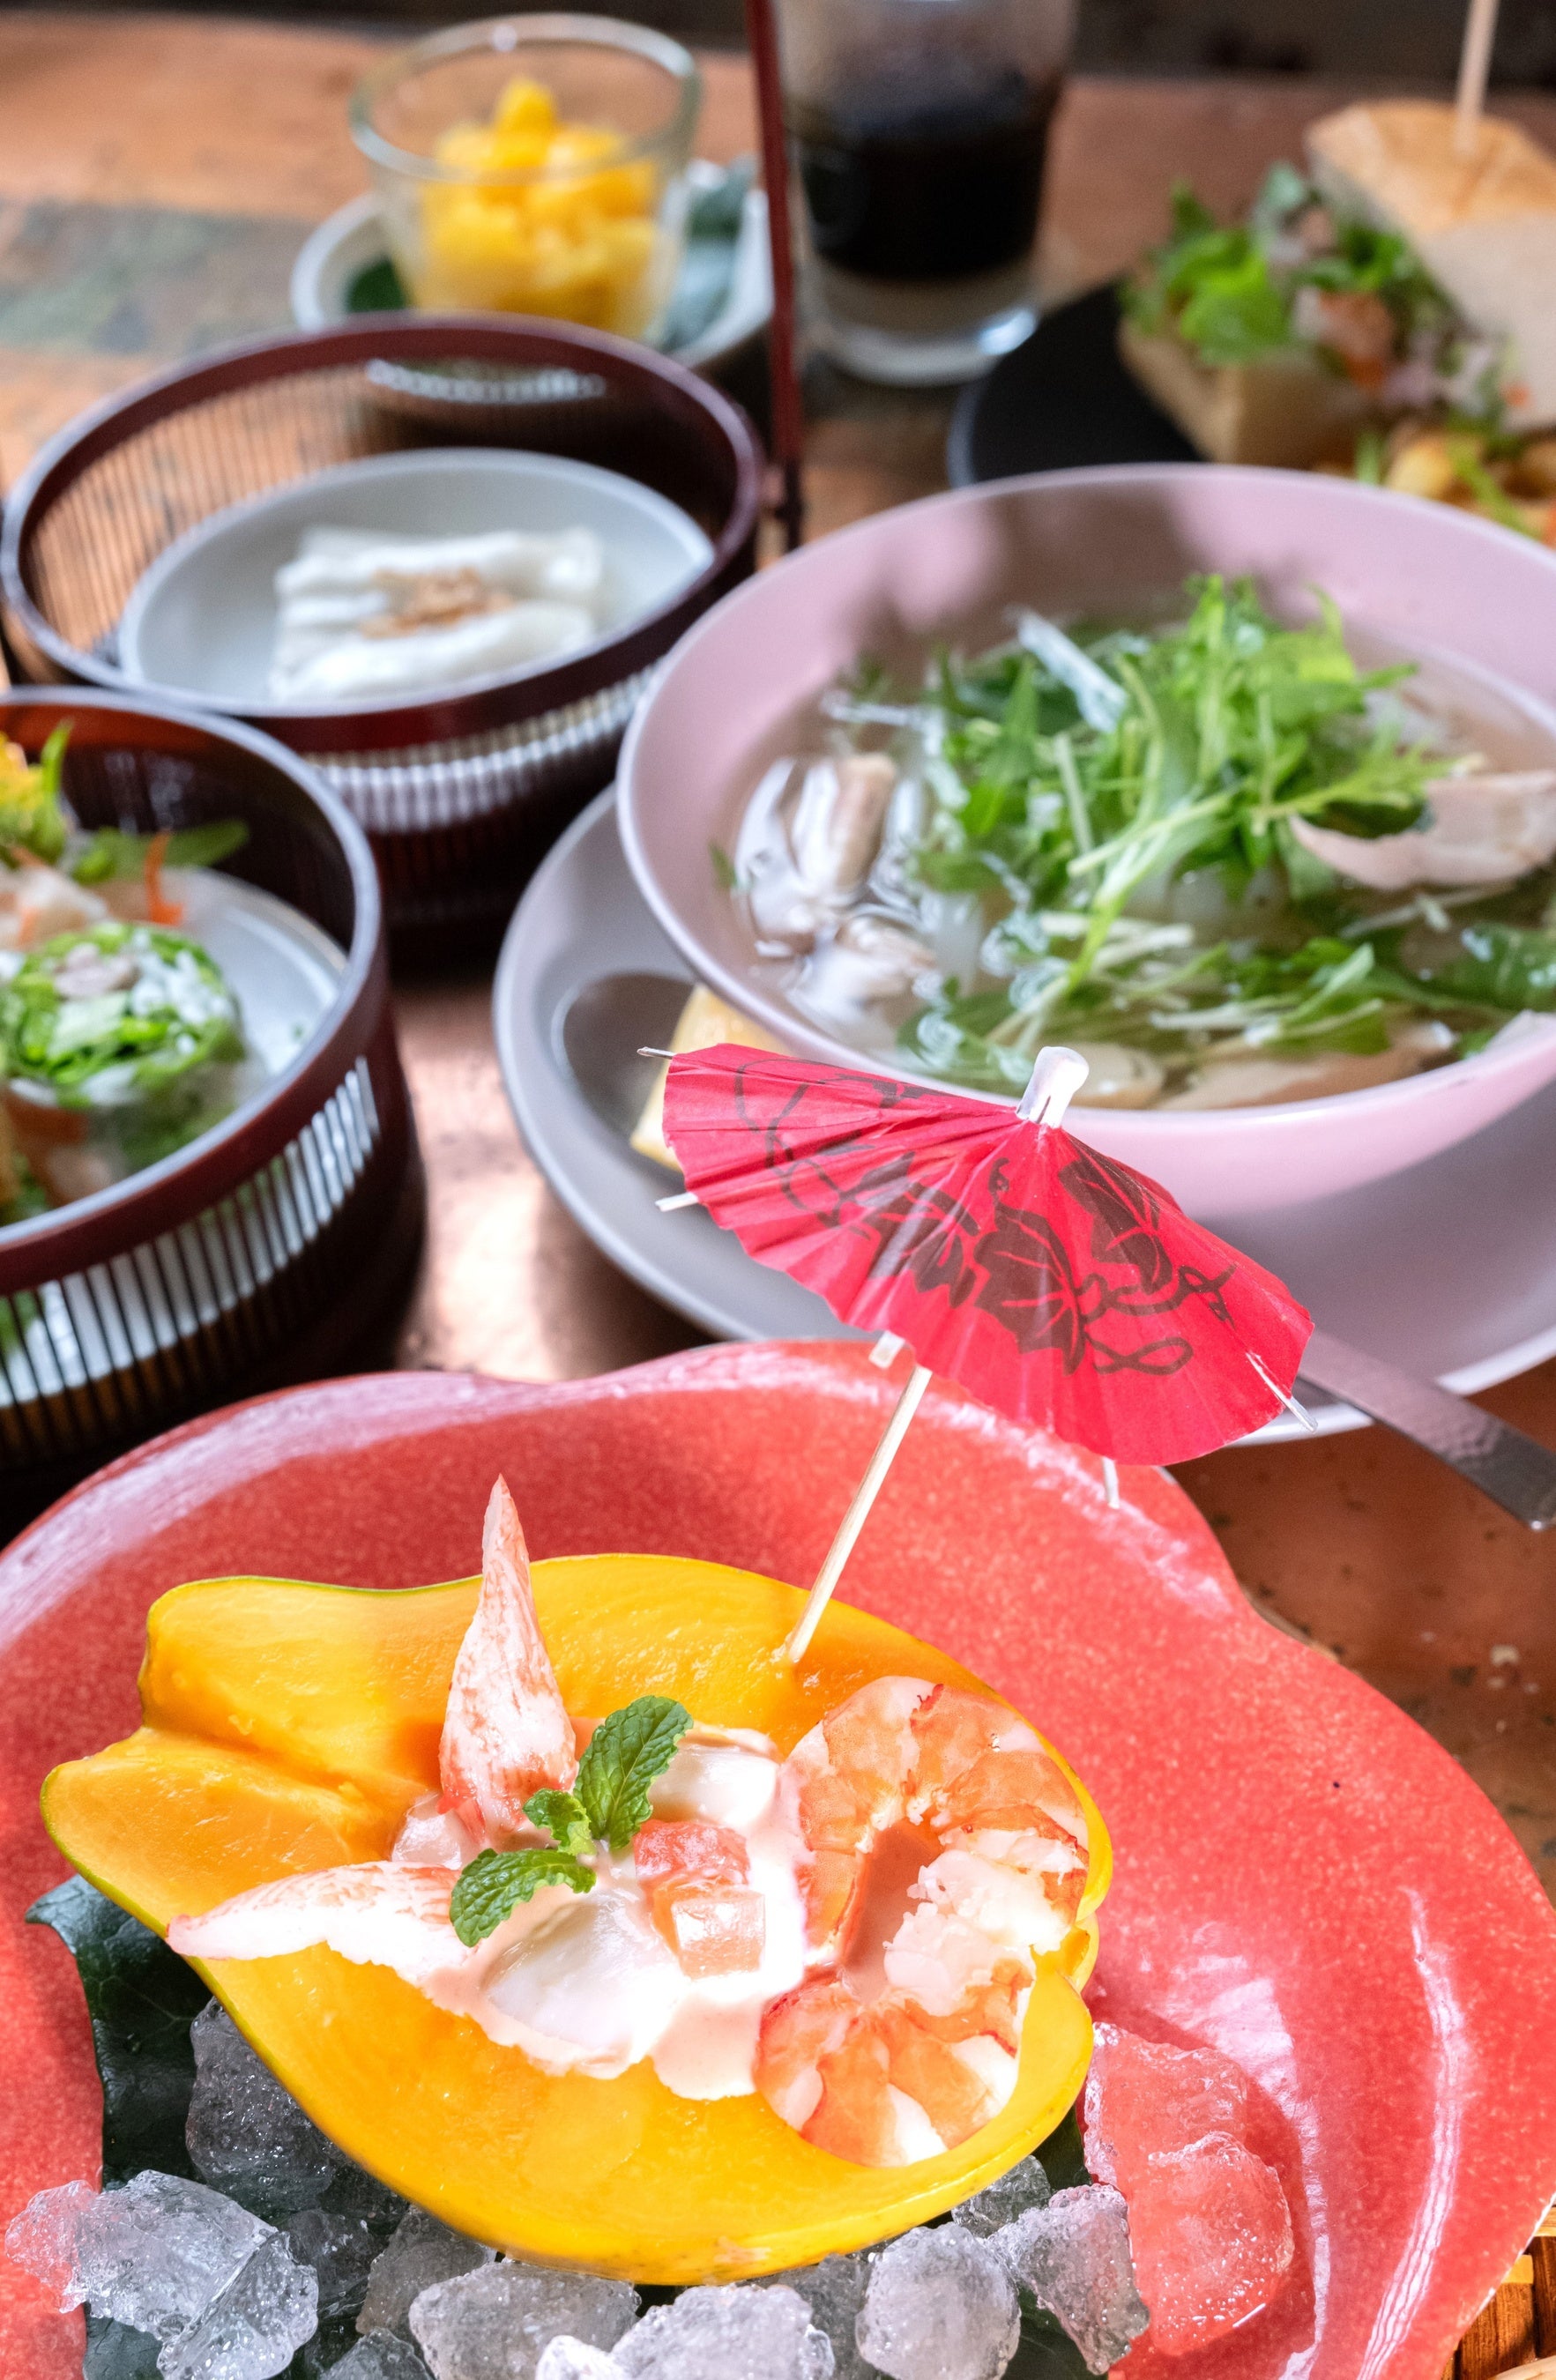 銀座のベトナム料理レストラン『ヴェトナム・アリス』この夏に迎える25周年を記念して特別感謝コースを限定販売